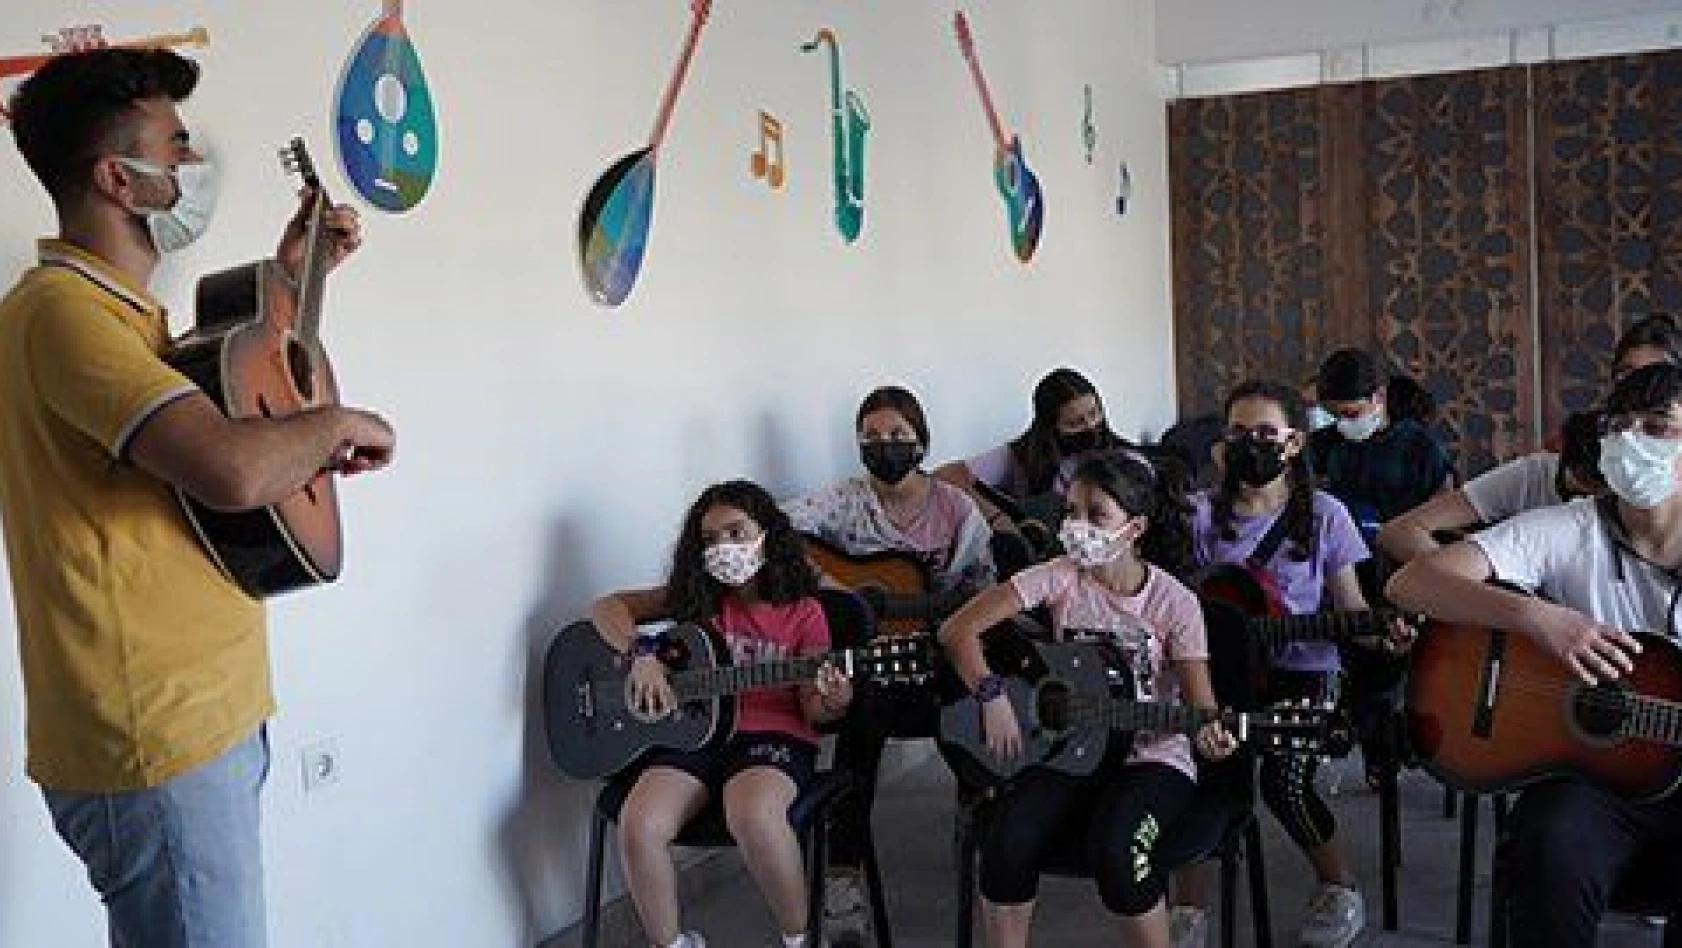 Talas Müzik Okulu genç yetenekleri keşfediyor